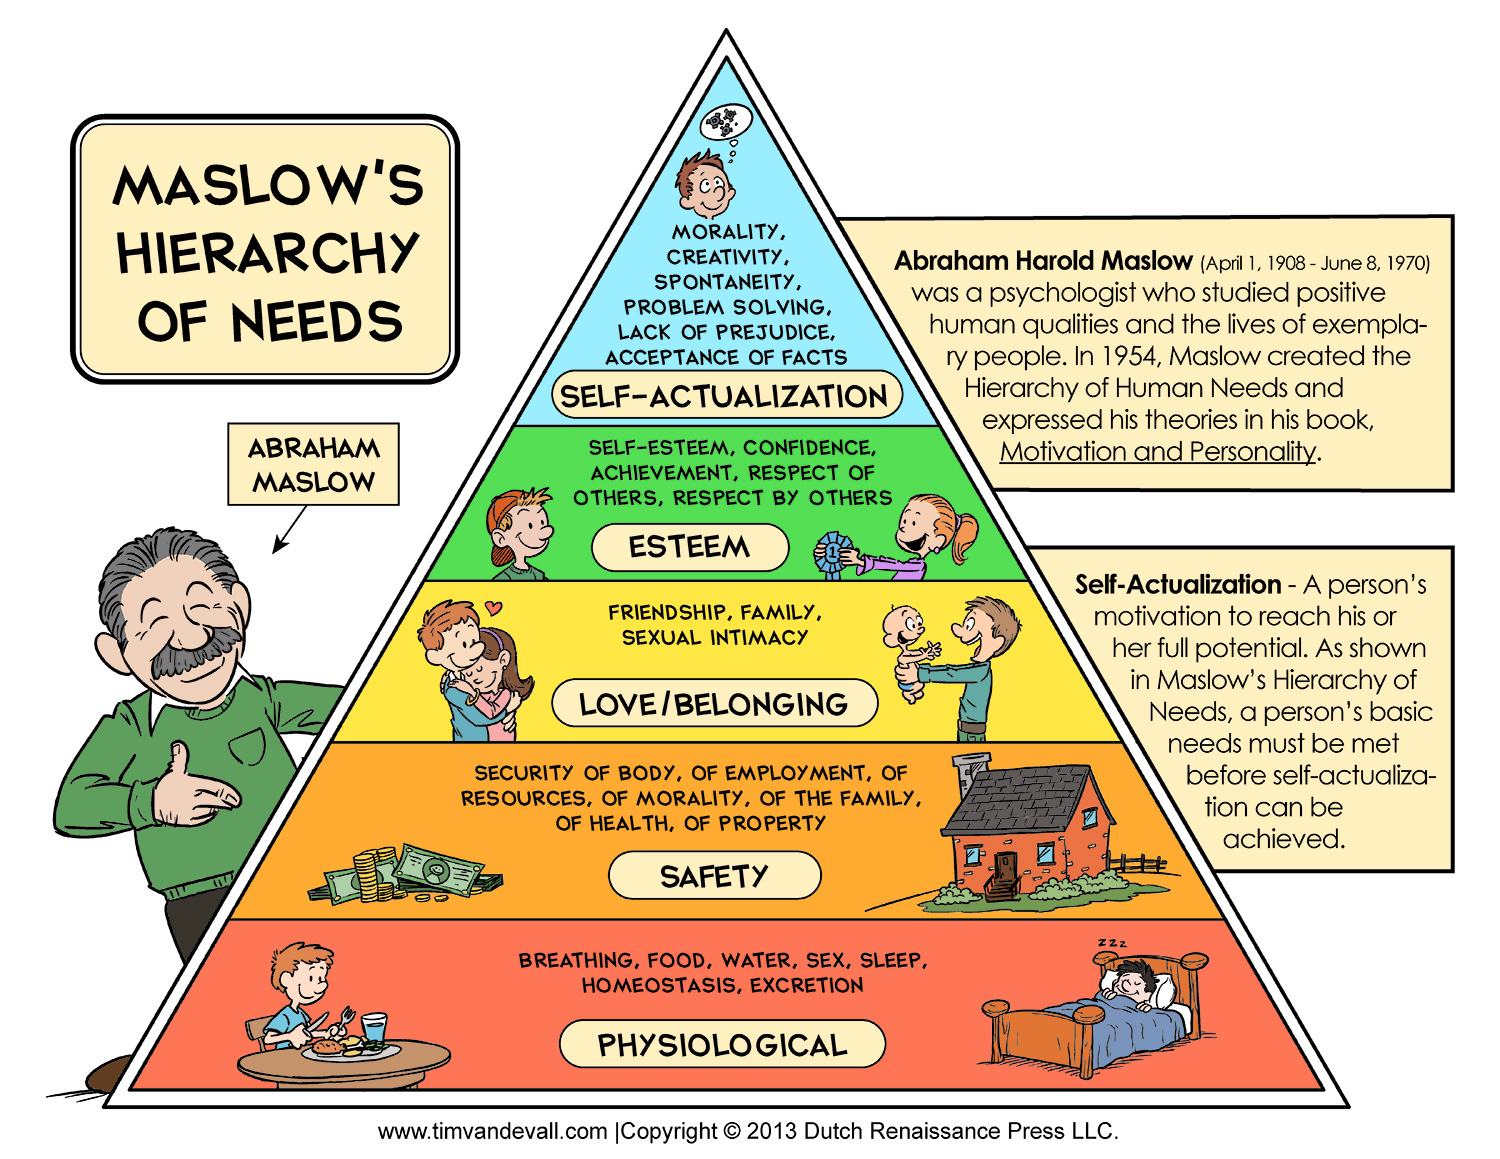 Zde je dobré si připomenout Maslowovu pyramidu potřeb a zamyslet se na které úrovně cílí uspokojení a naplnění.